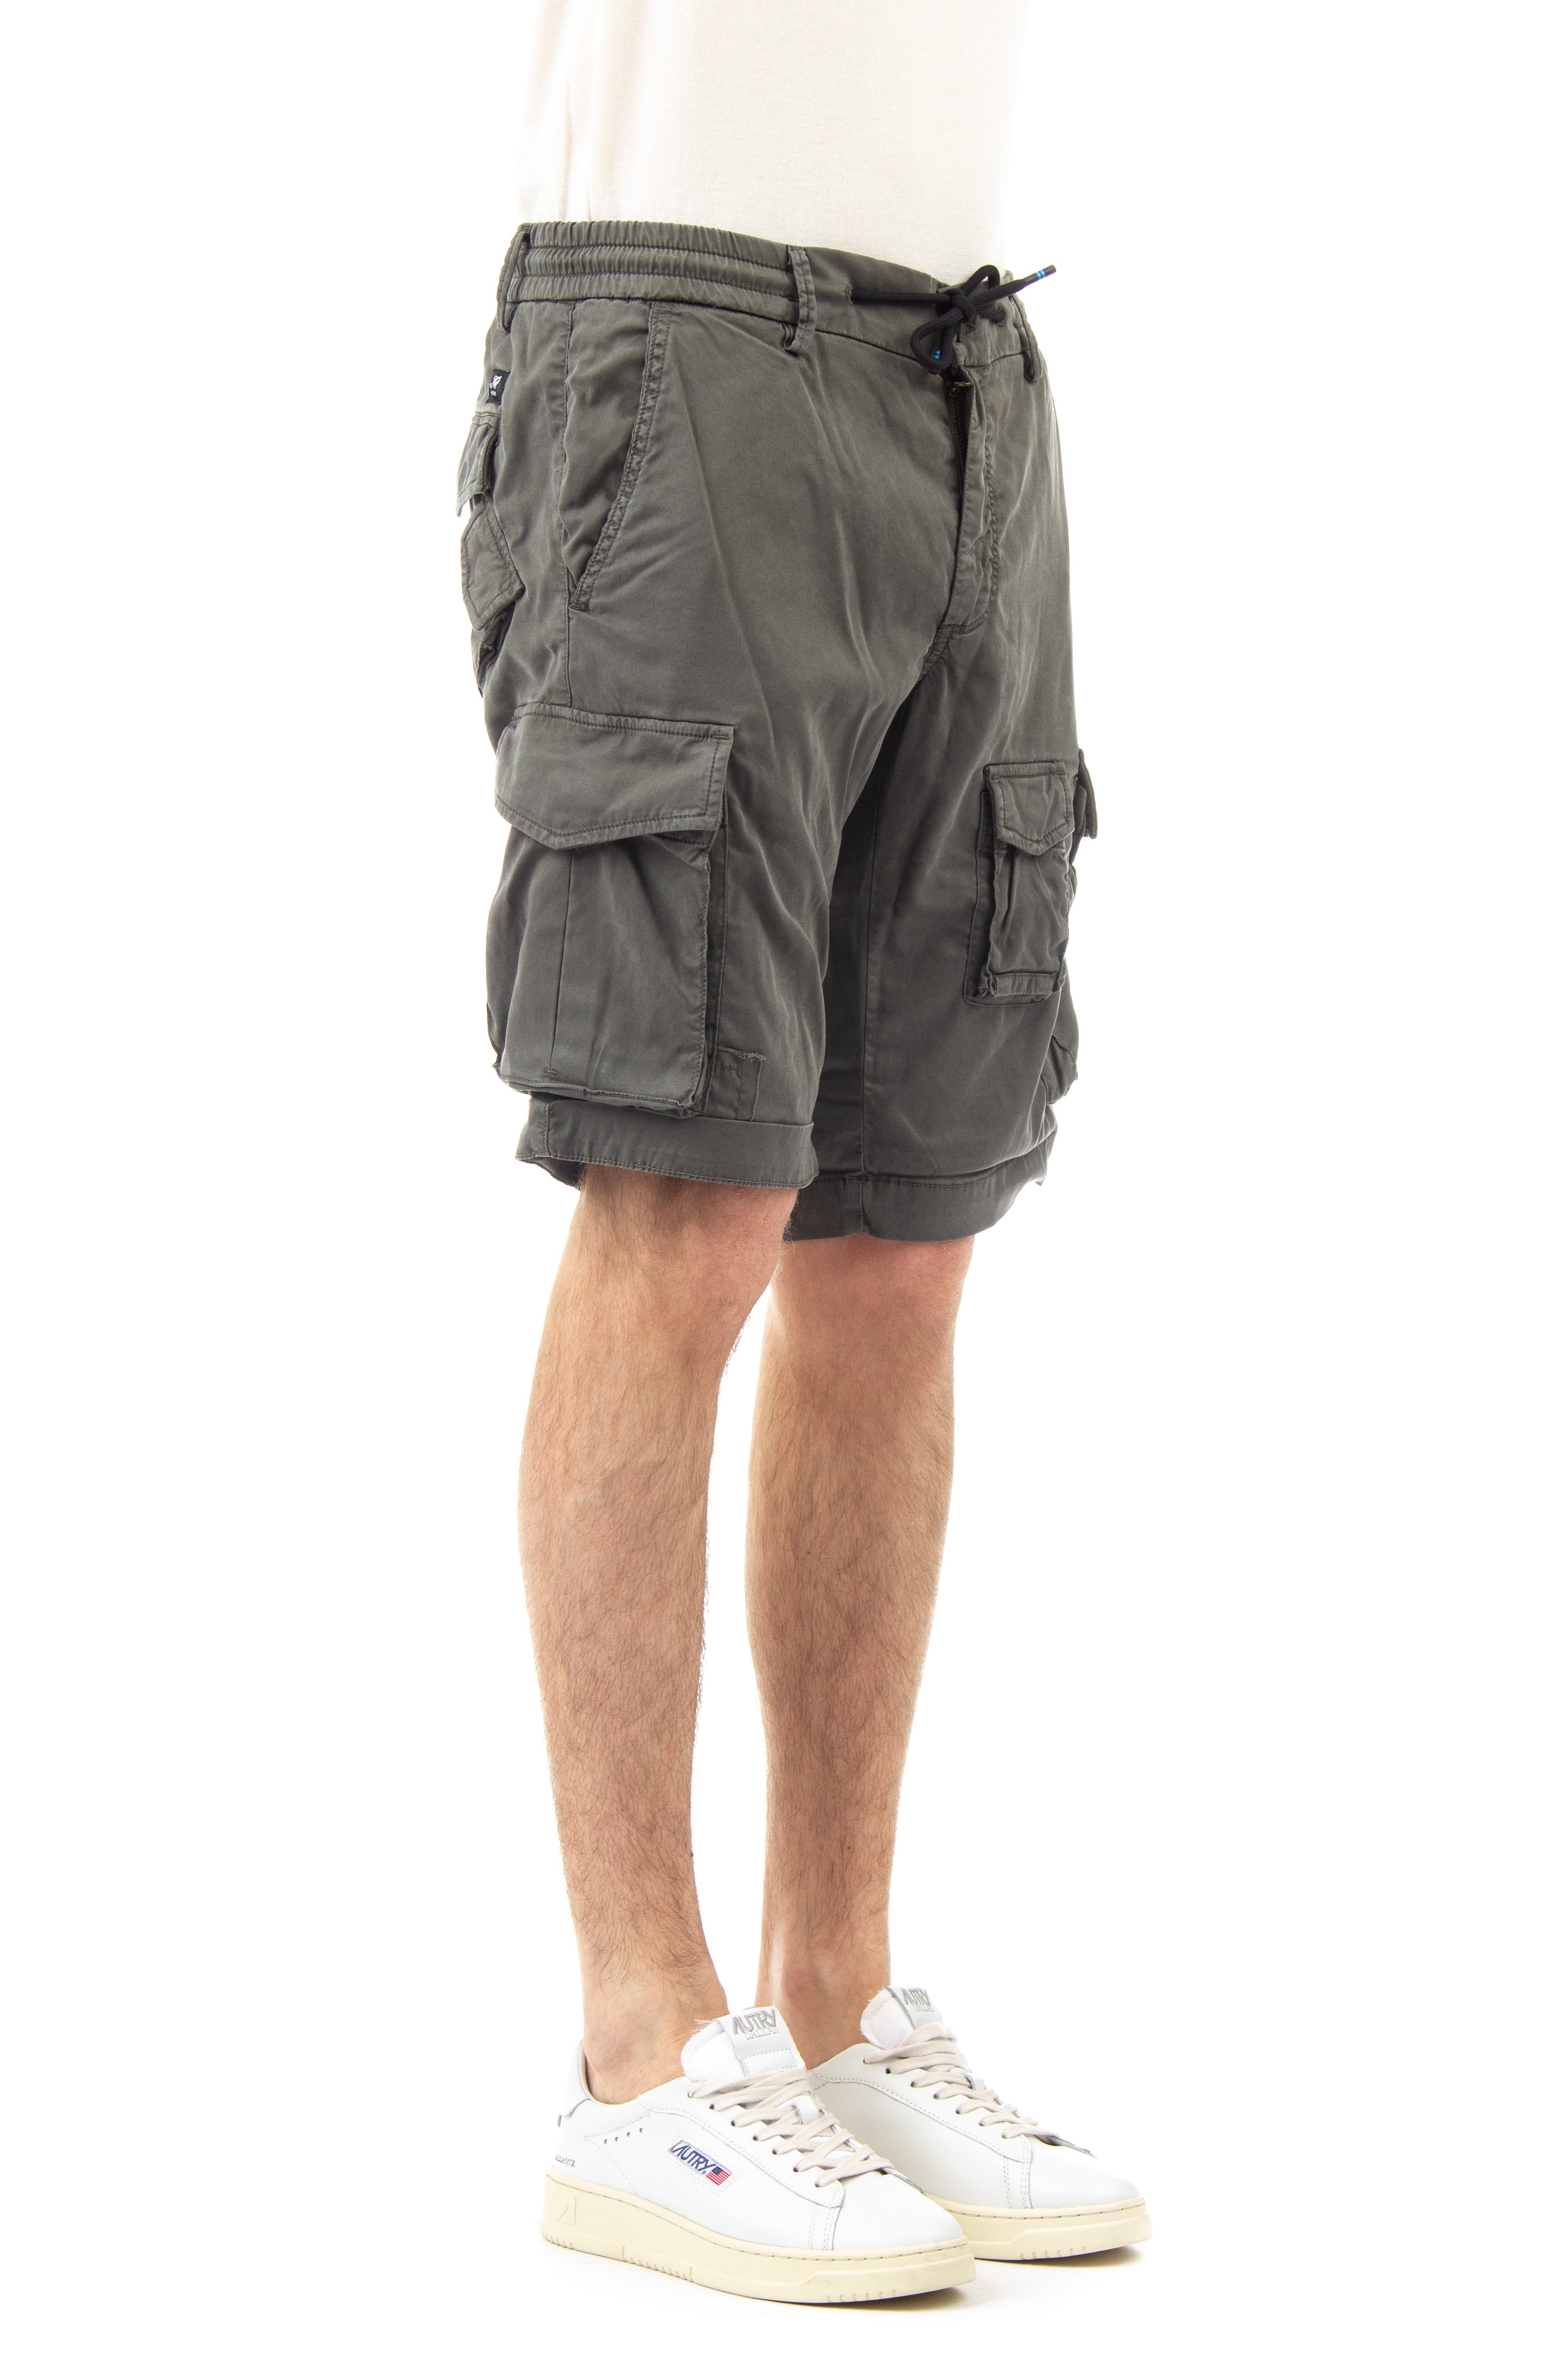 Snake jogger model multi-pocket lyocell Bermuda shorts